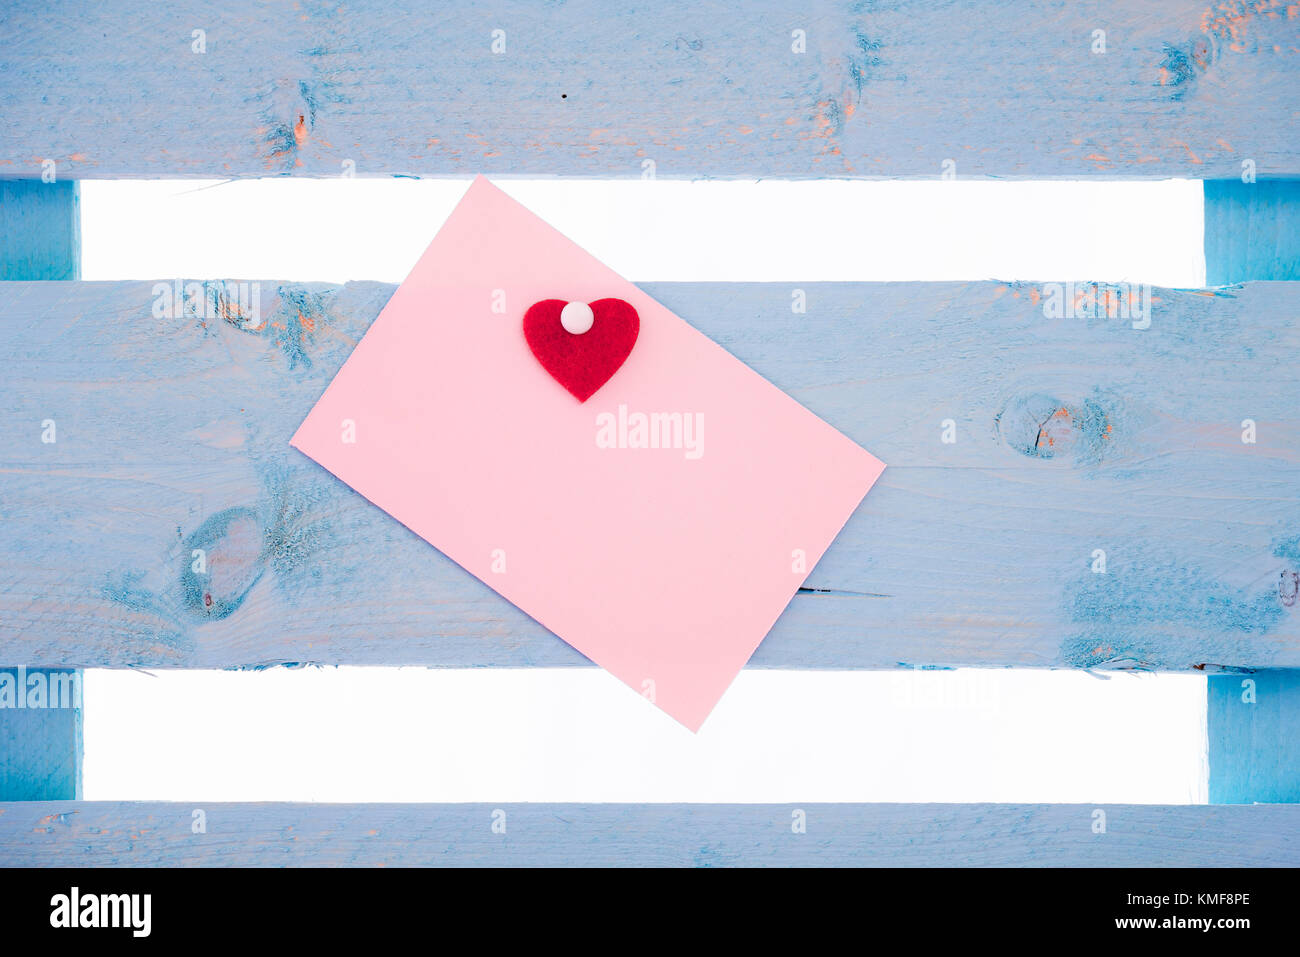 Vuoto carta rosa nota con un cuore rosso incollate e insieme imperniato ad un blu staccionata in legno. Foto Stock